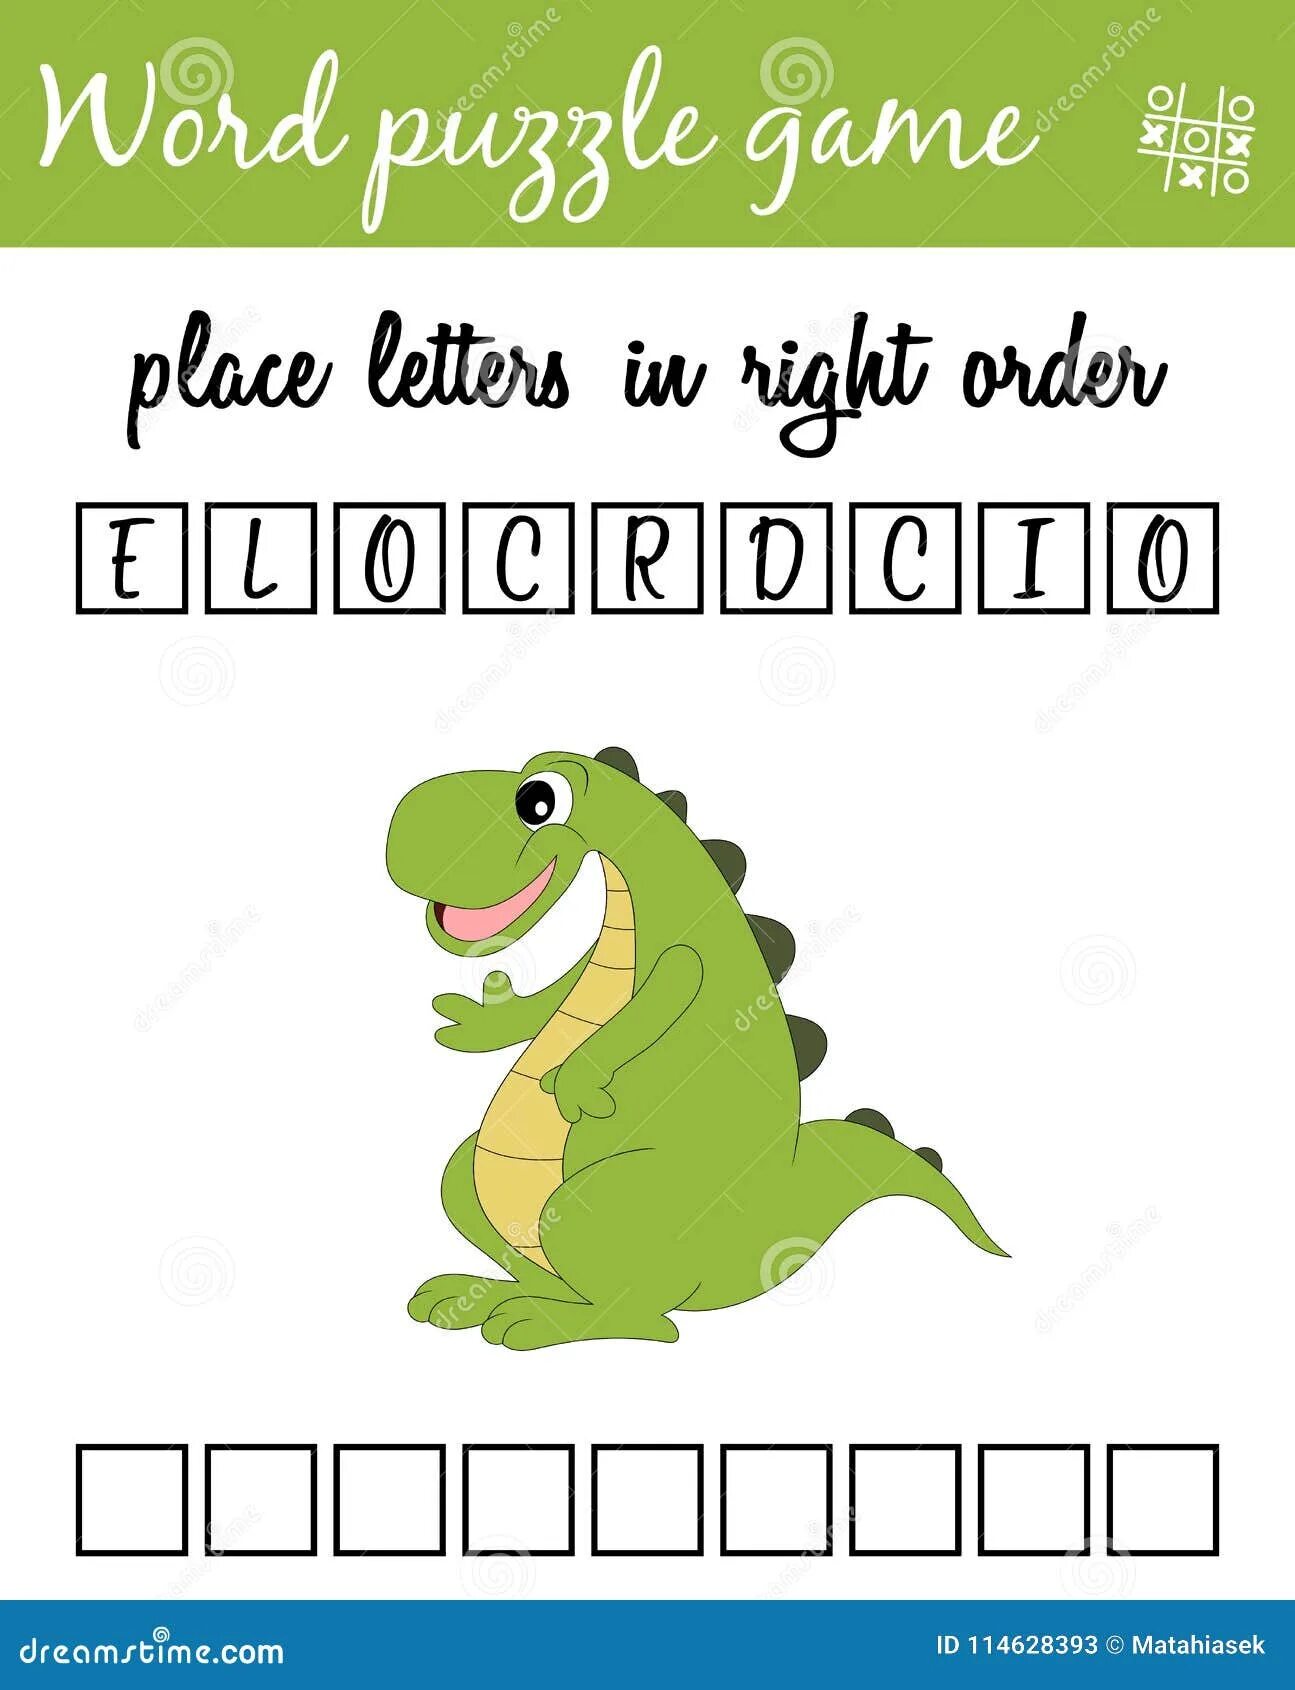 Английские слова для крокодила. Слова для игры в крокодила на английском. Игра крокодил на английском для детей. Игра крокодил на английском